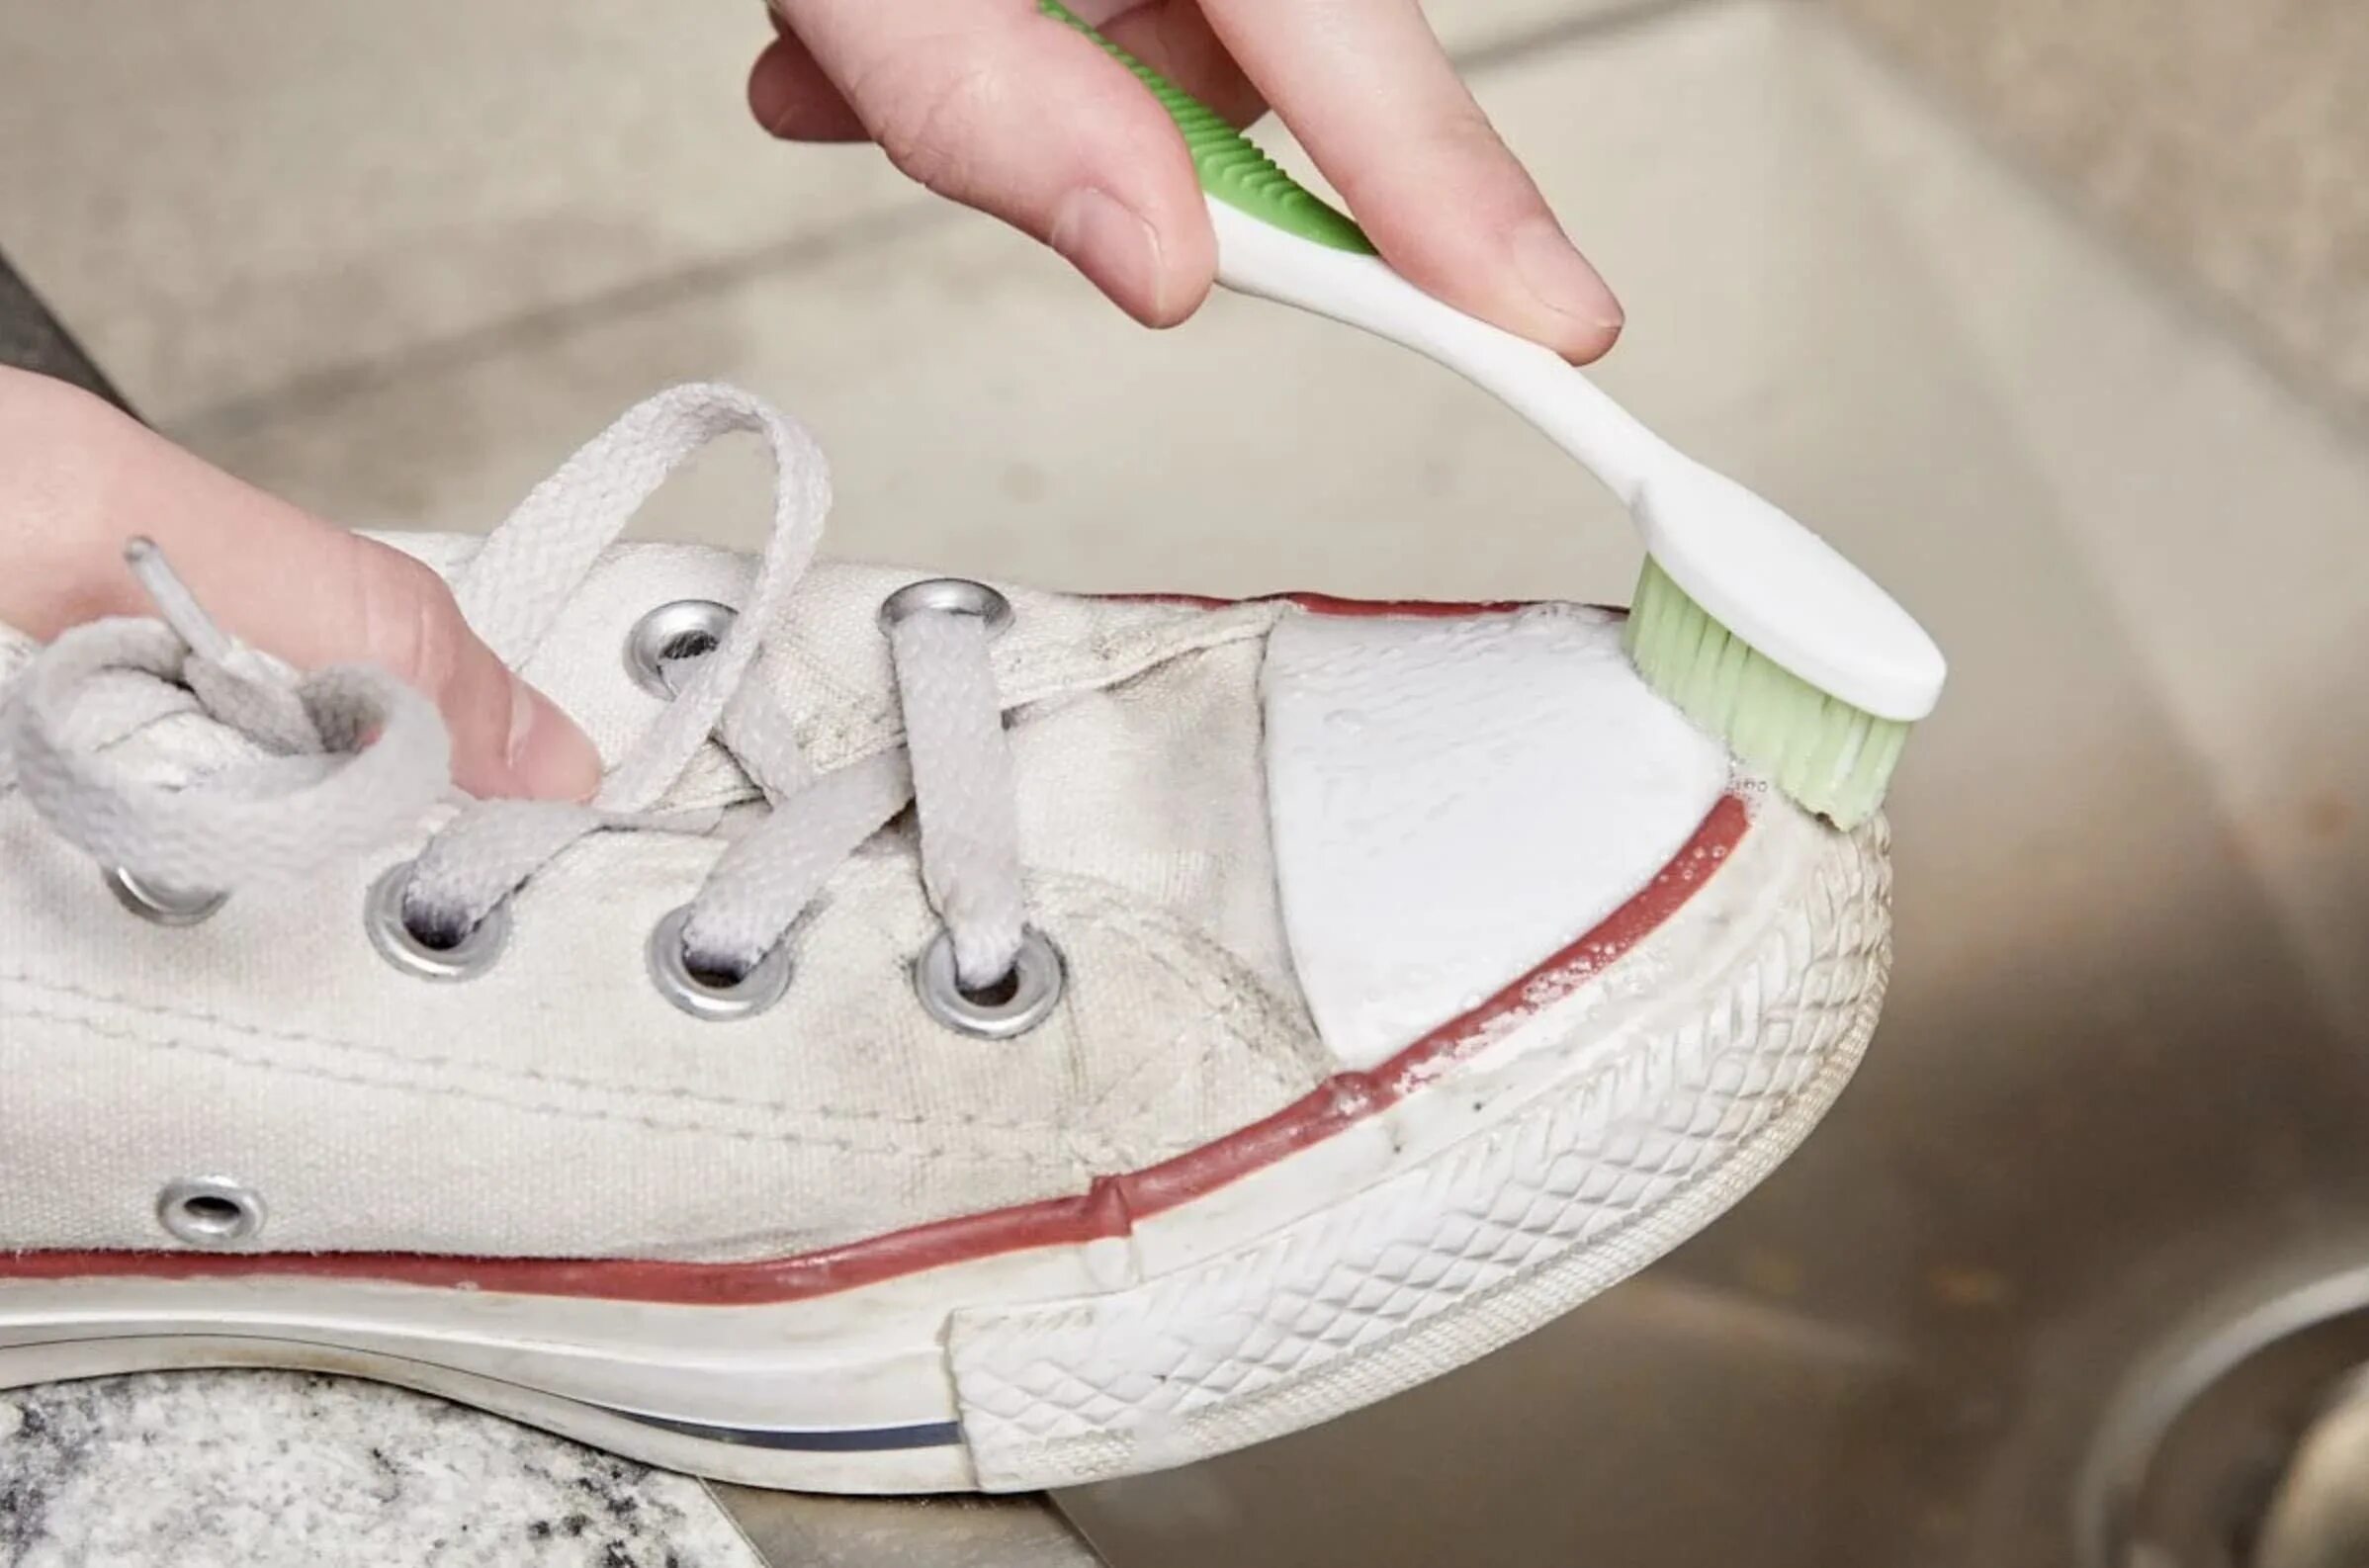 Кеды в клею. Зубная паста для кроссовок. Протирает белую кеды салфеткой. Очистить белую обувь зубной пастой.